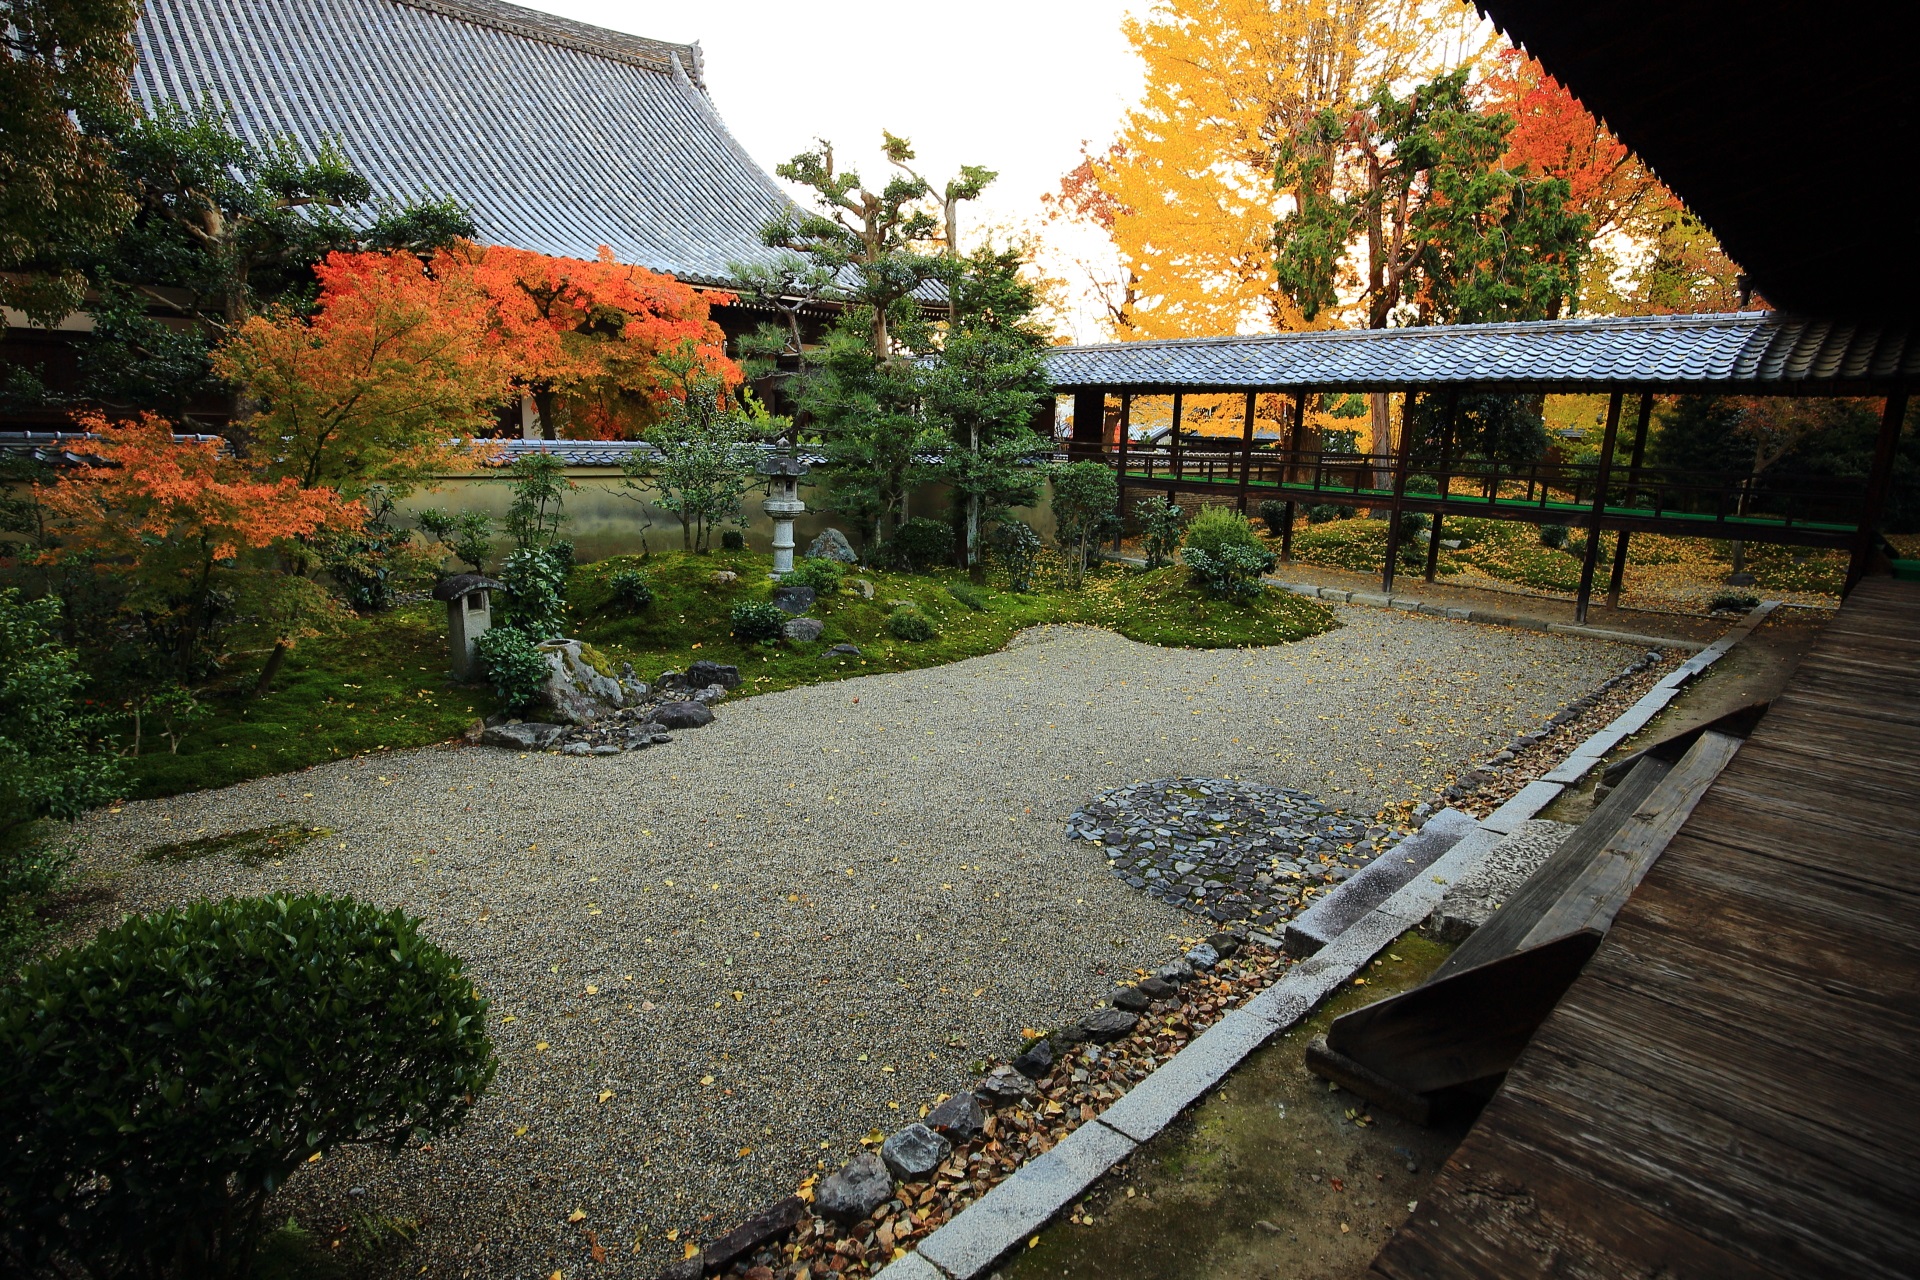 立本寺庭園の白砂と苔を彩る鮮やかな紅葉と銀杏